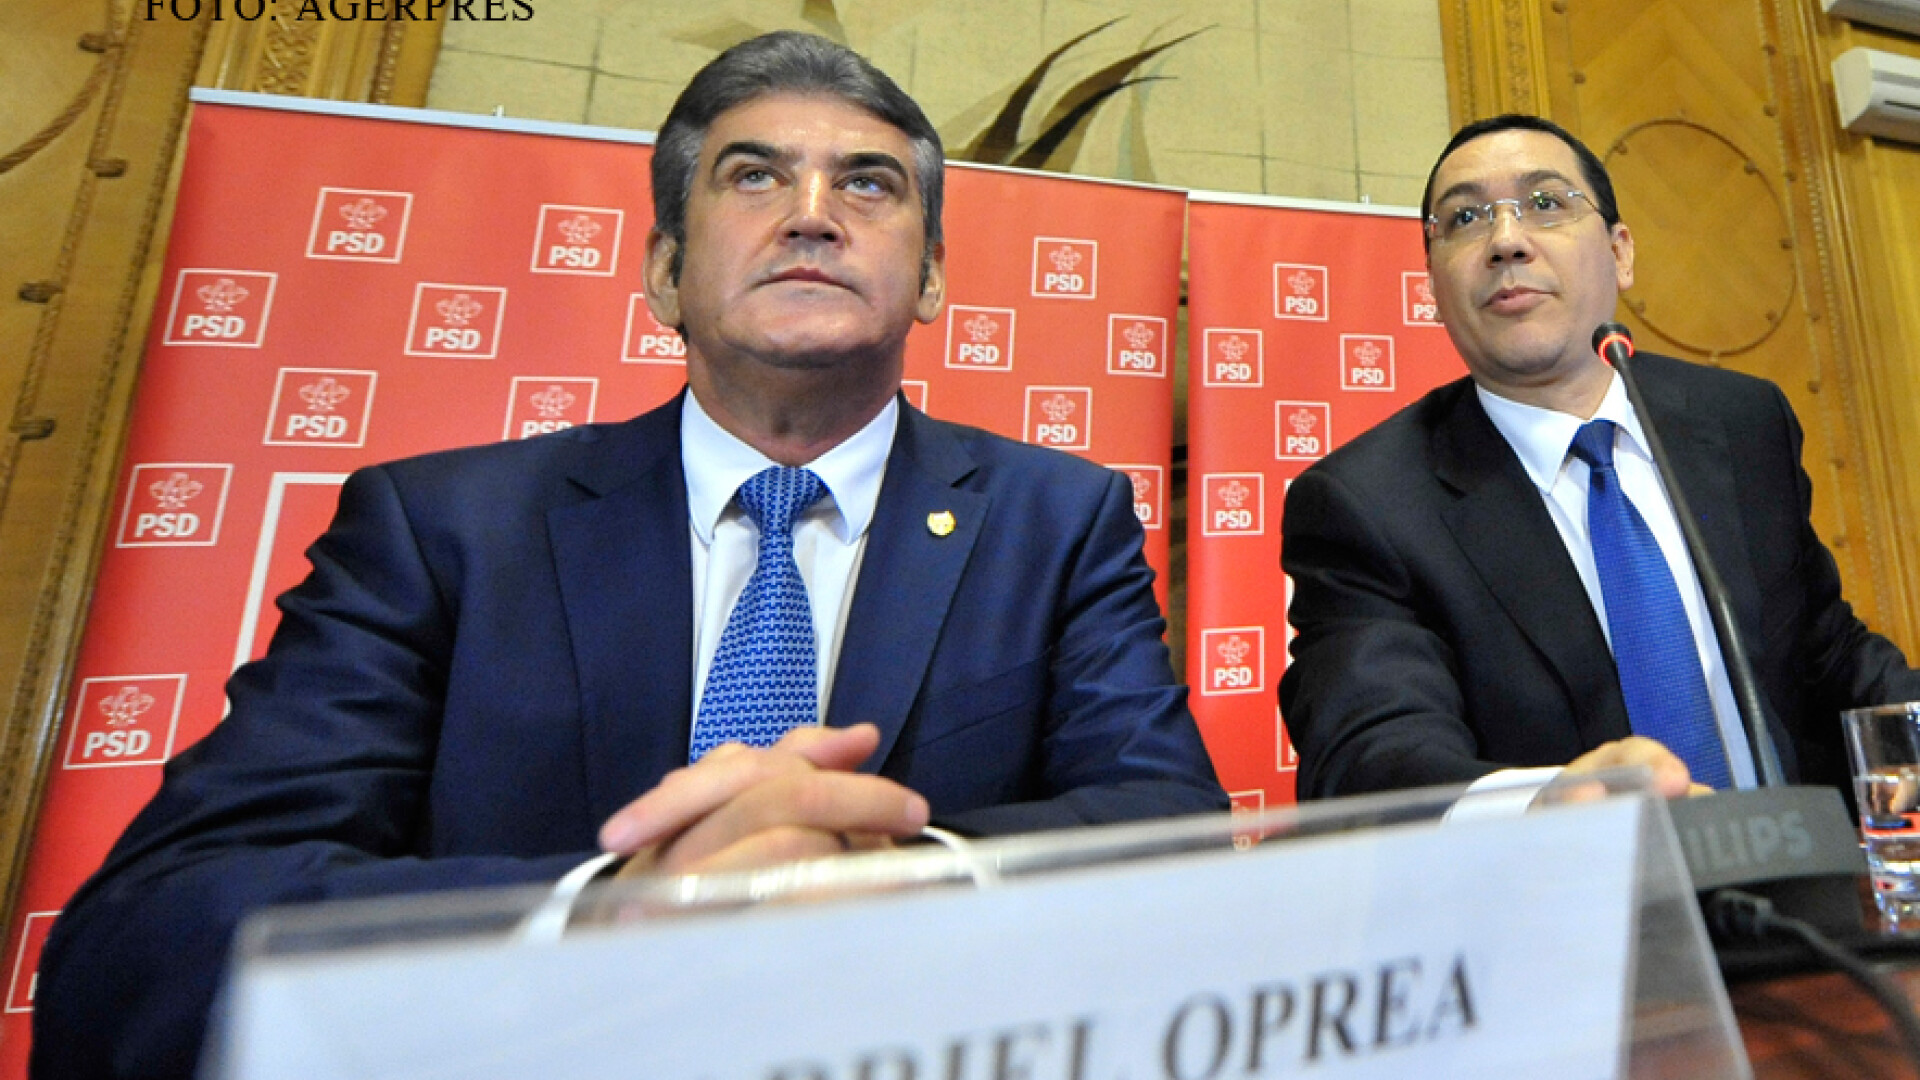 Gabriel Oprea si Victor Ponta FOTO AGERPRES